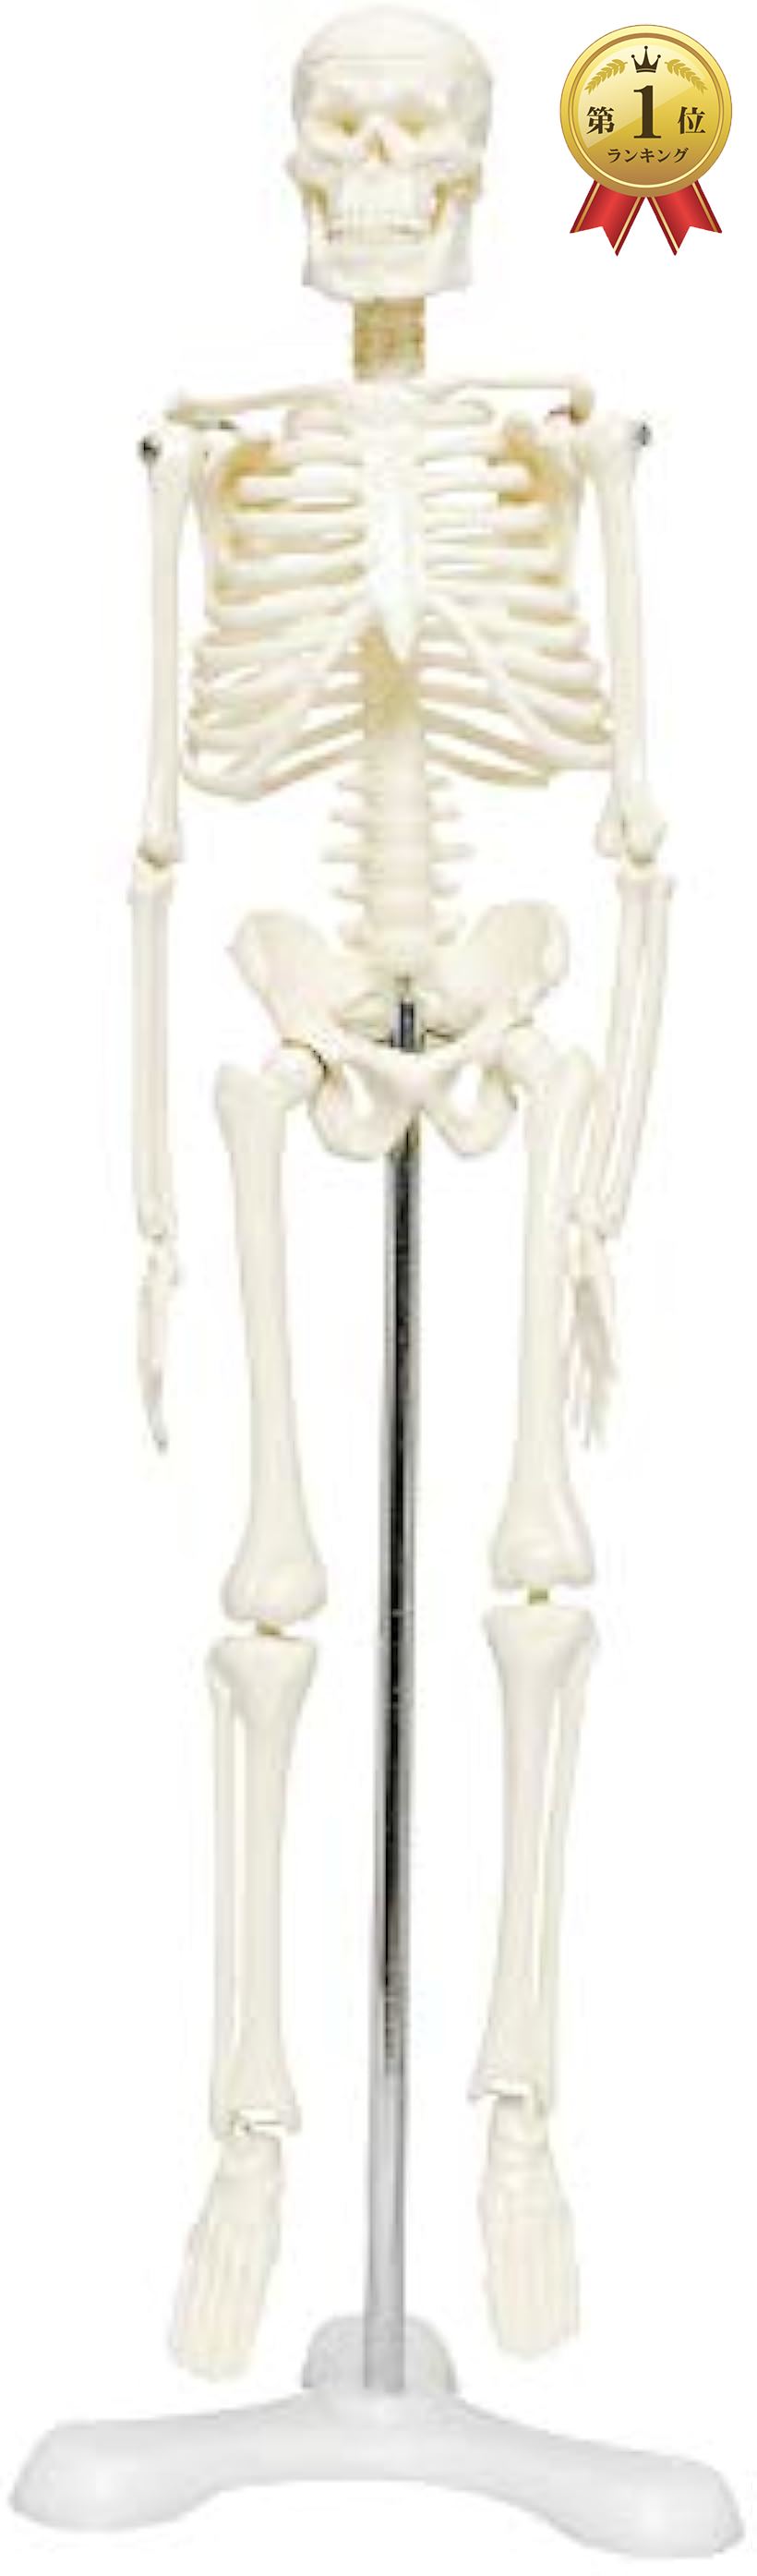 MONOLIFE 人体骨格模型 流行 骨格標本 稼動 直立 スタンド 教材 台座 45cm 新作 4 モデル 三つ足 ホワイト 1